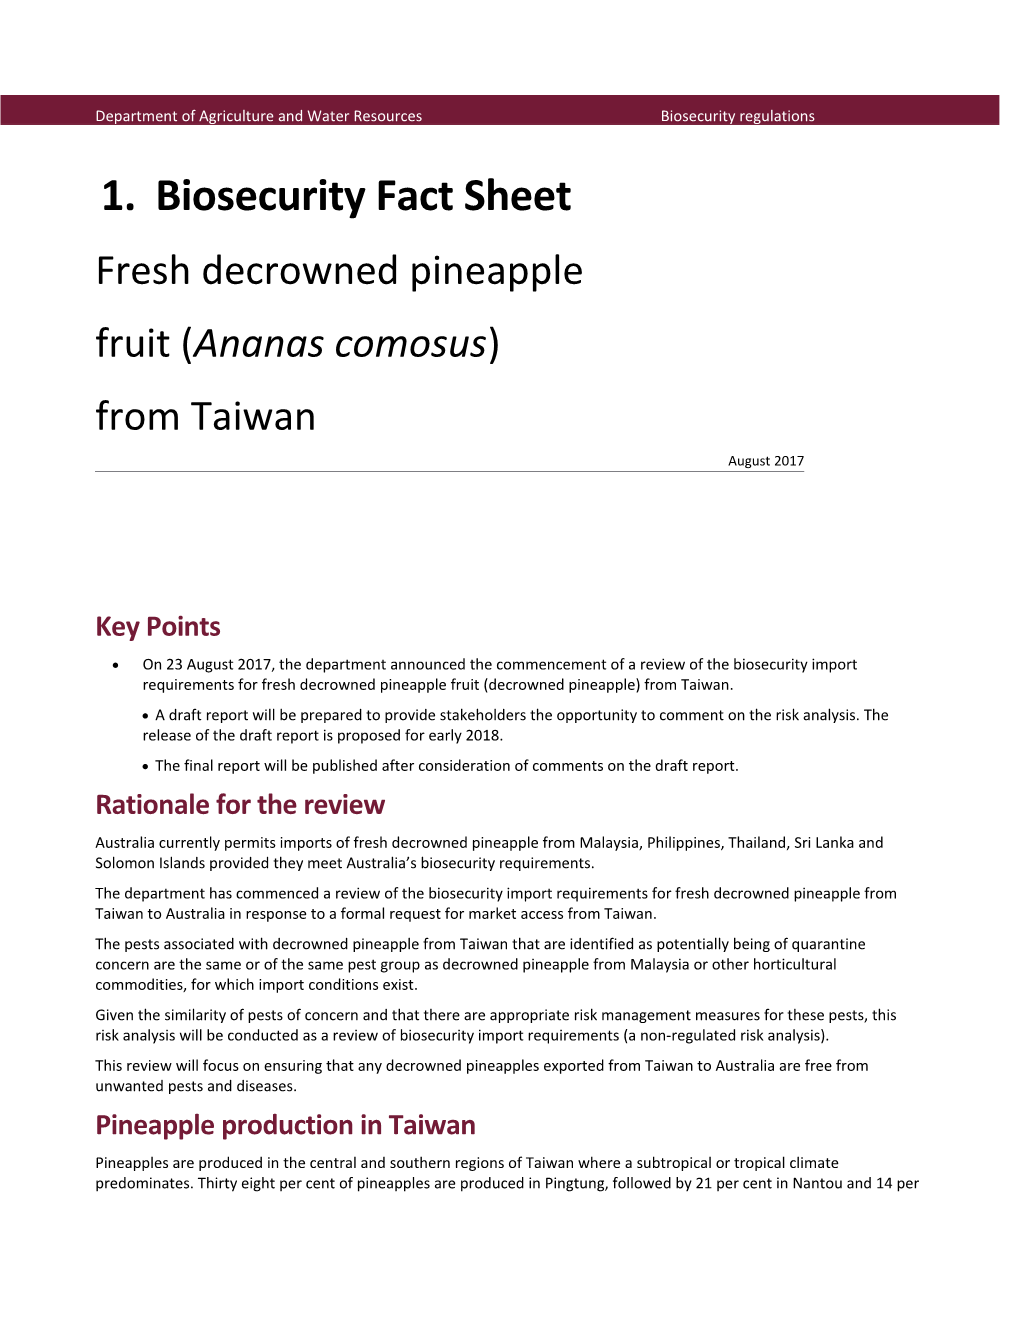 Biosecurity Fact Sheet